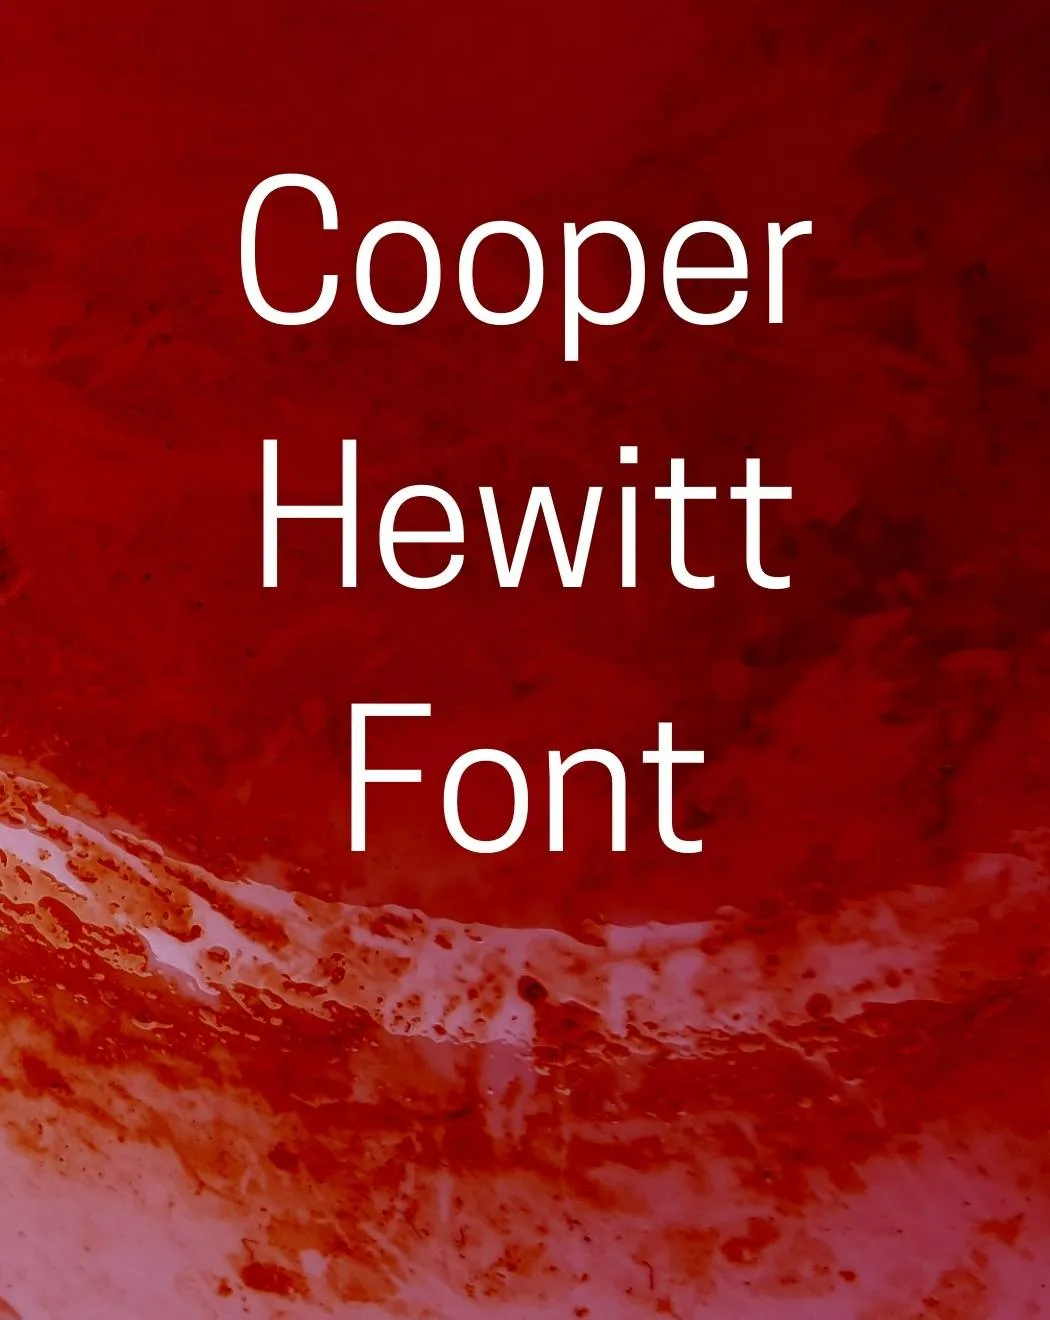 Cooper Hewitt Font Free Download